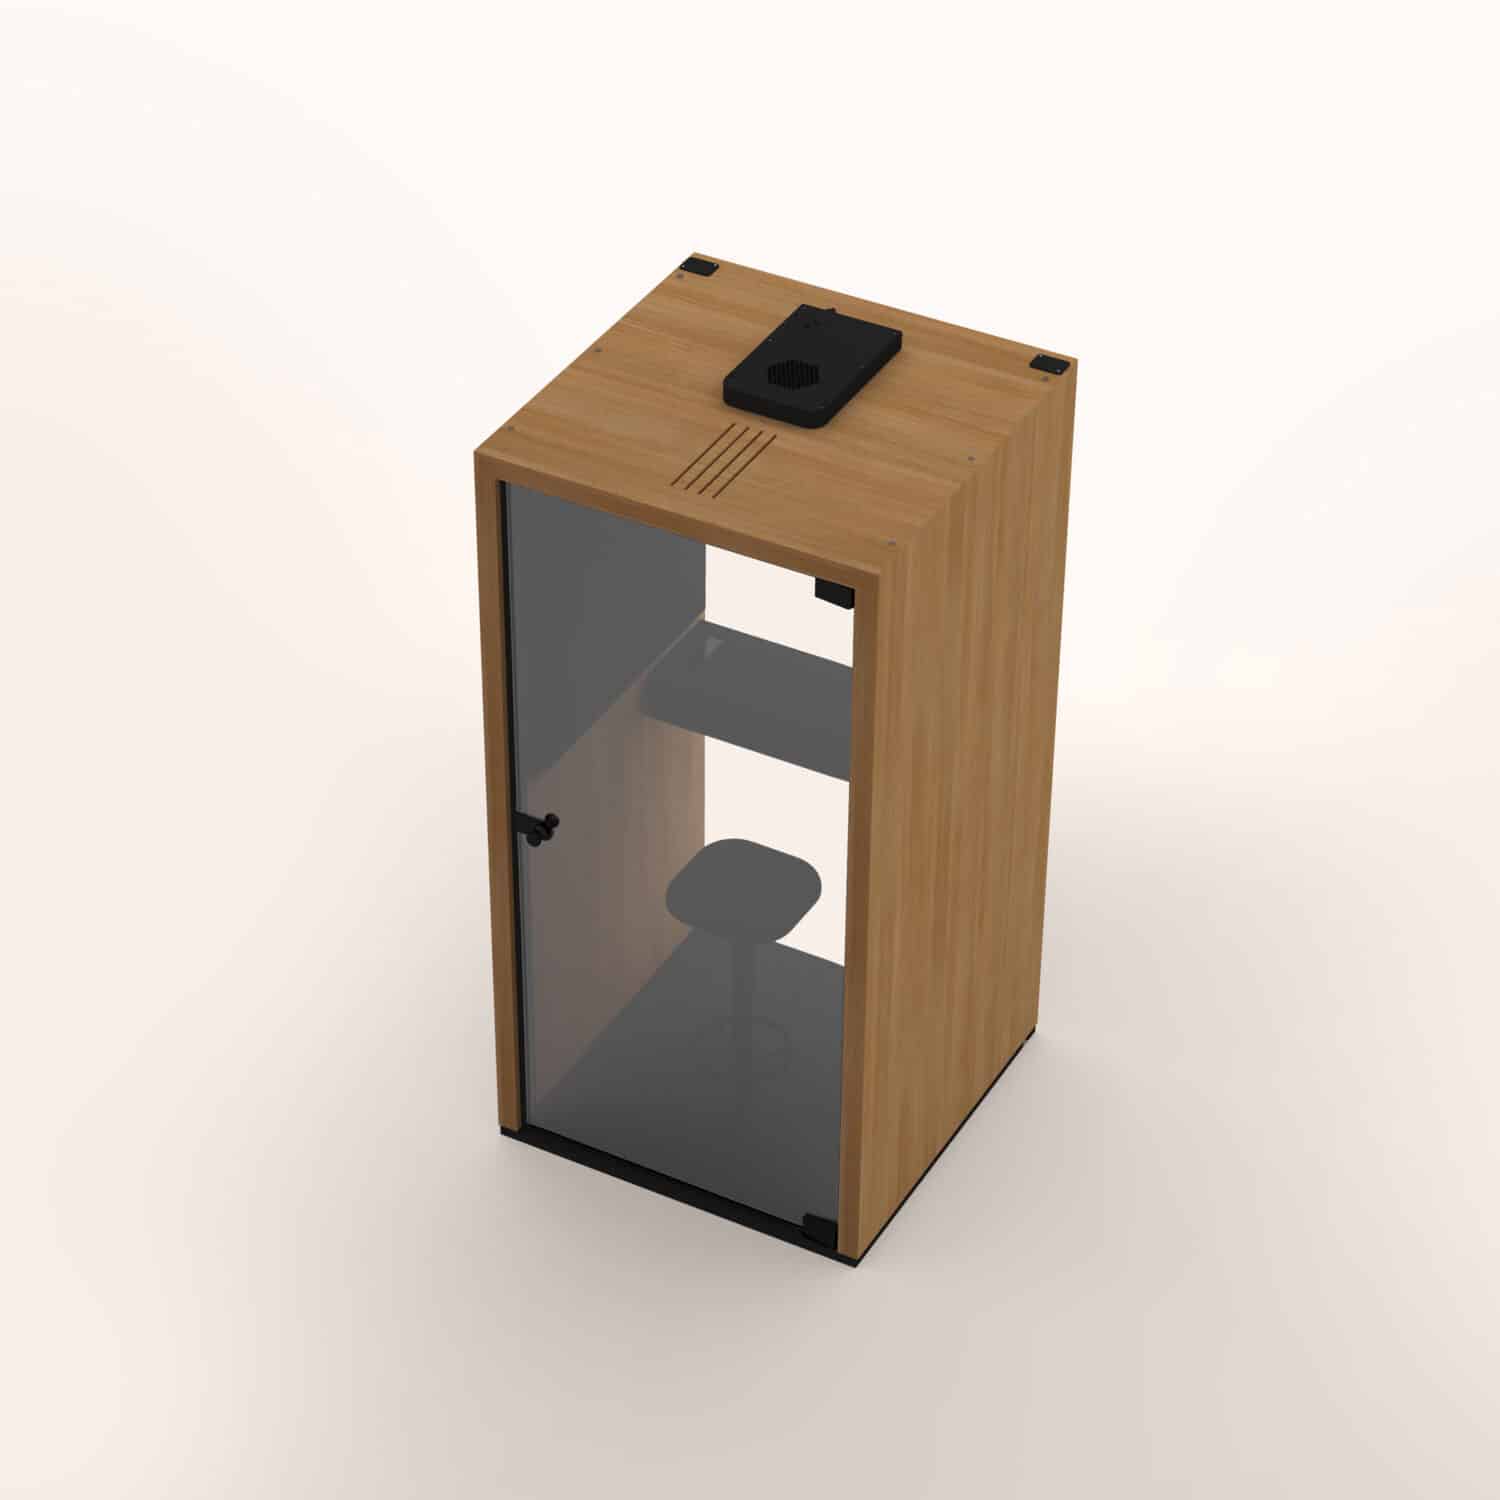 Taiga-Concept-Lohko-Box-1-image-6-1